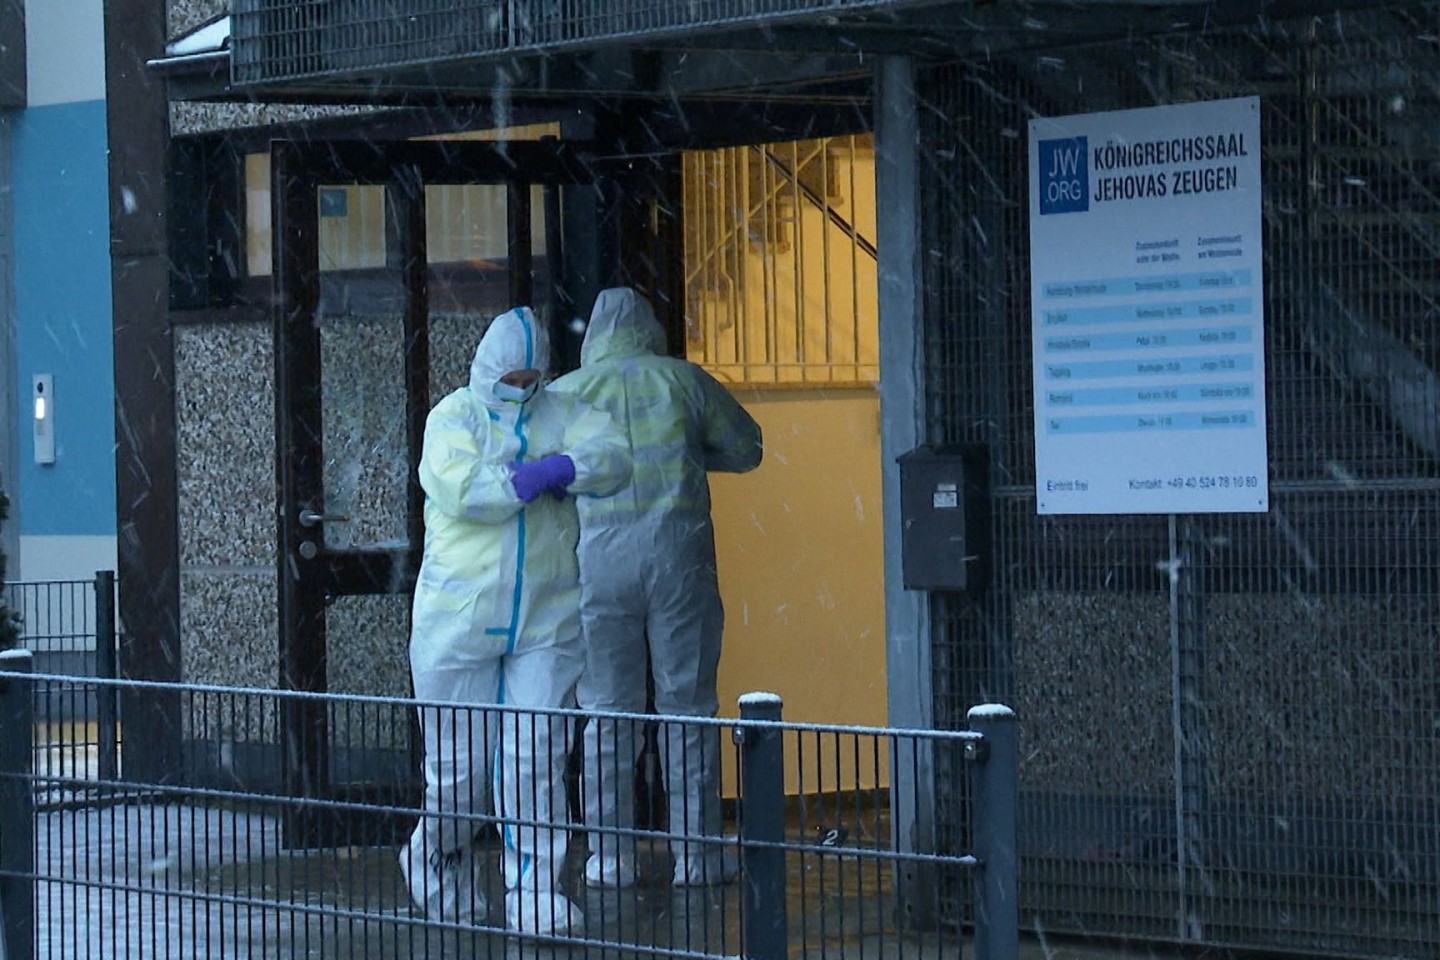 Ermittler stehen am Morgen vor dem Gebäude der Zeugen Jehovas in Hamburg, in dem mehrere Menschen getötet wurden.